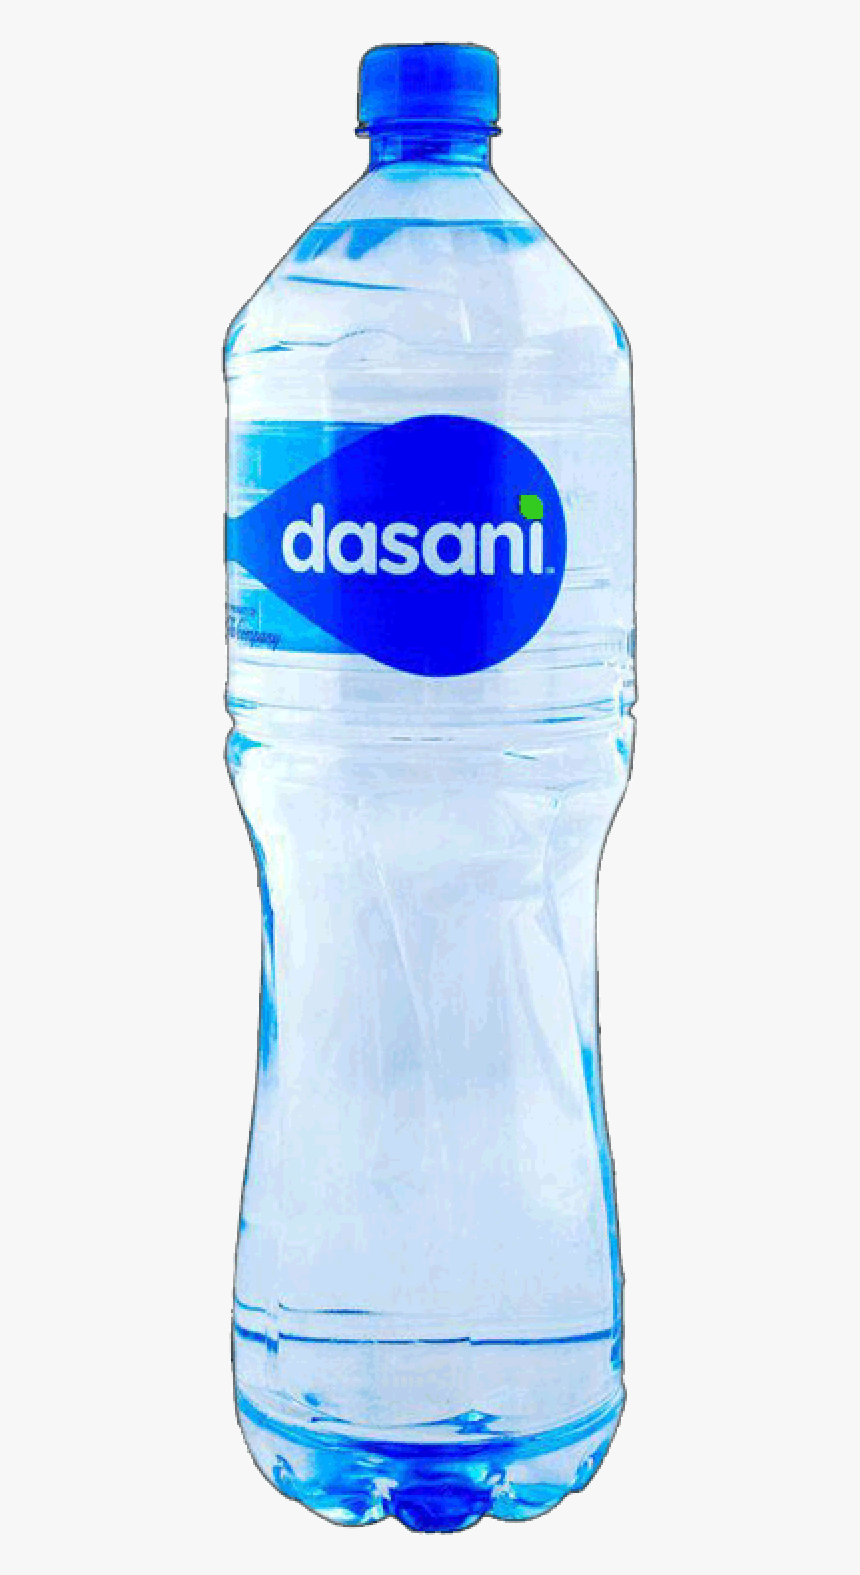 Detail Dasani Water Bottle Png Nomer 10